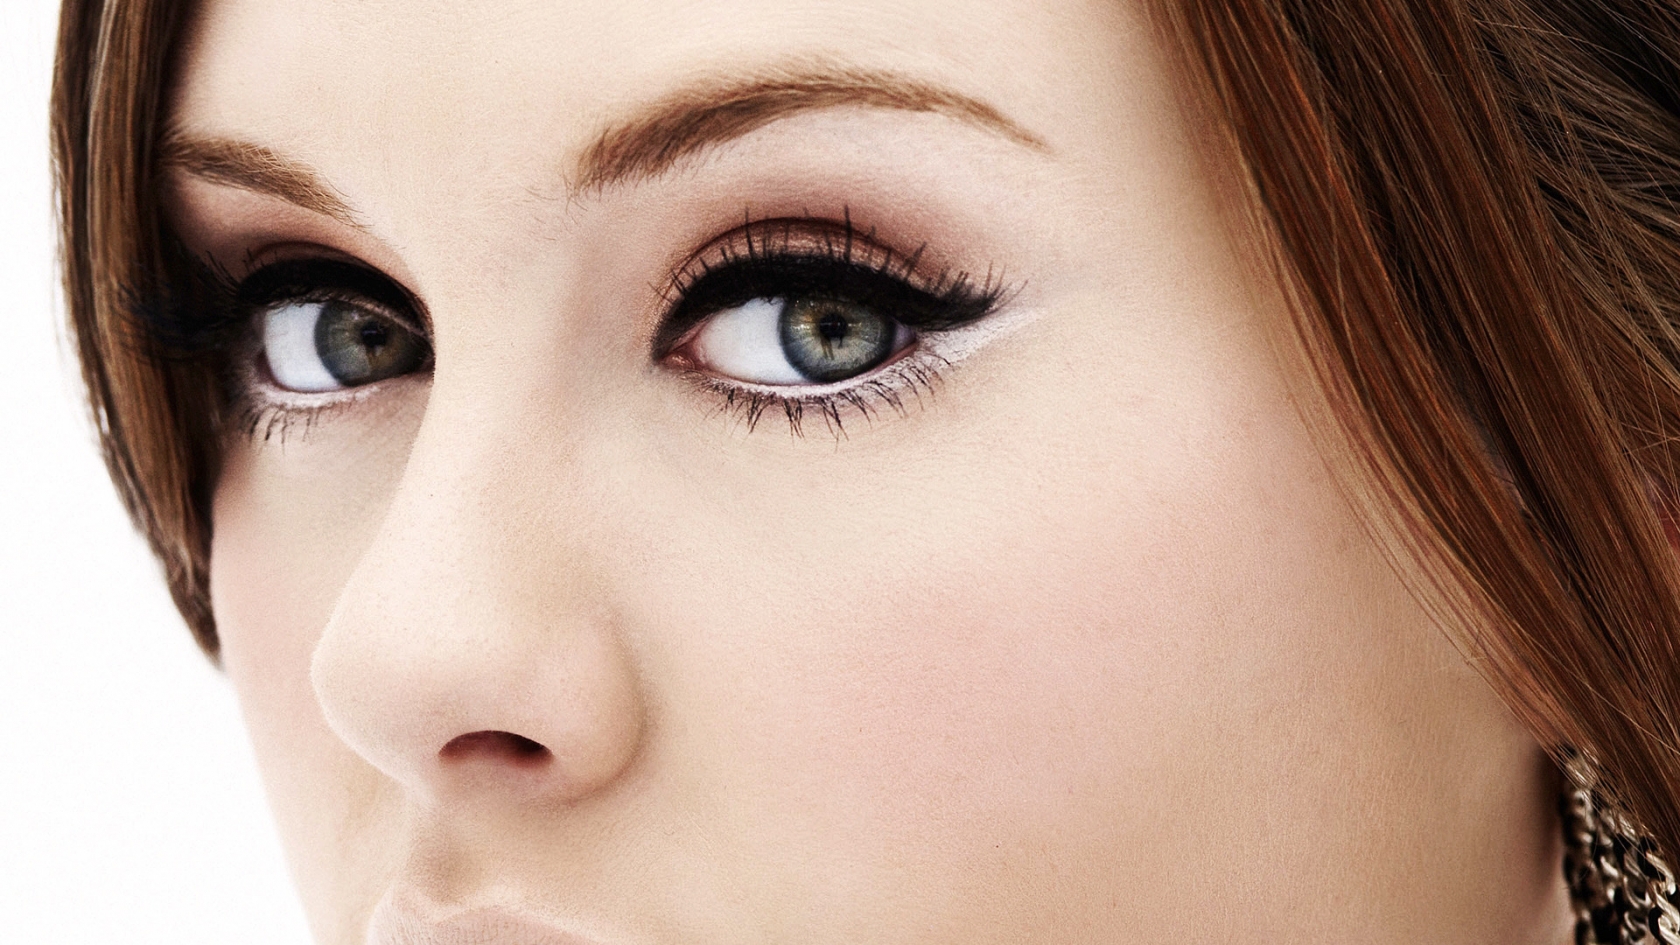 Adele Eyes for 1680 x 945 HDTV resolution